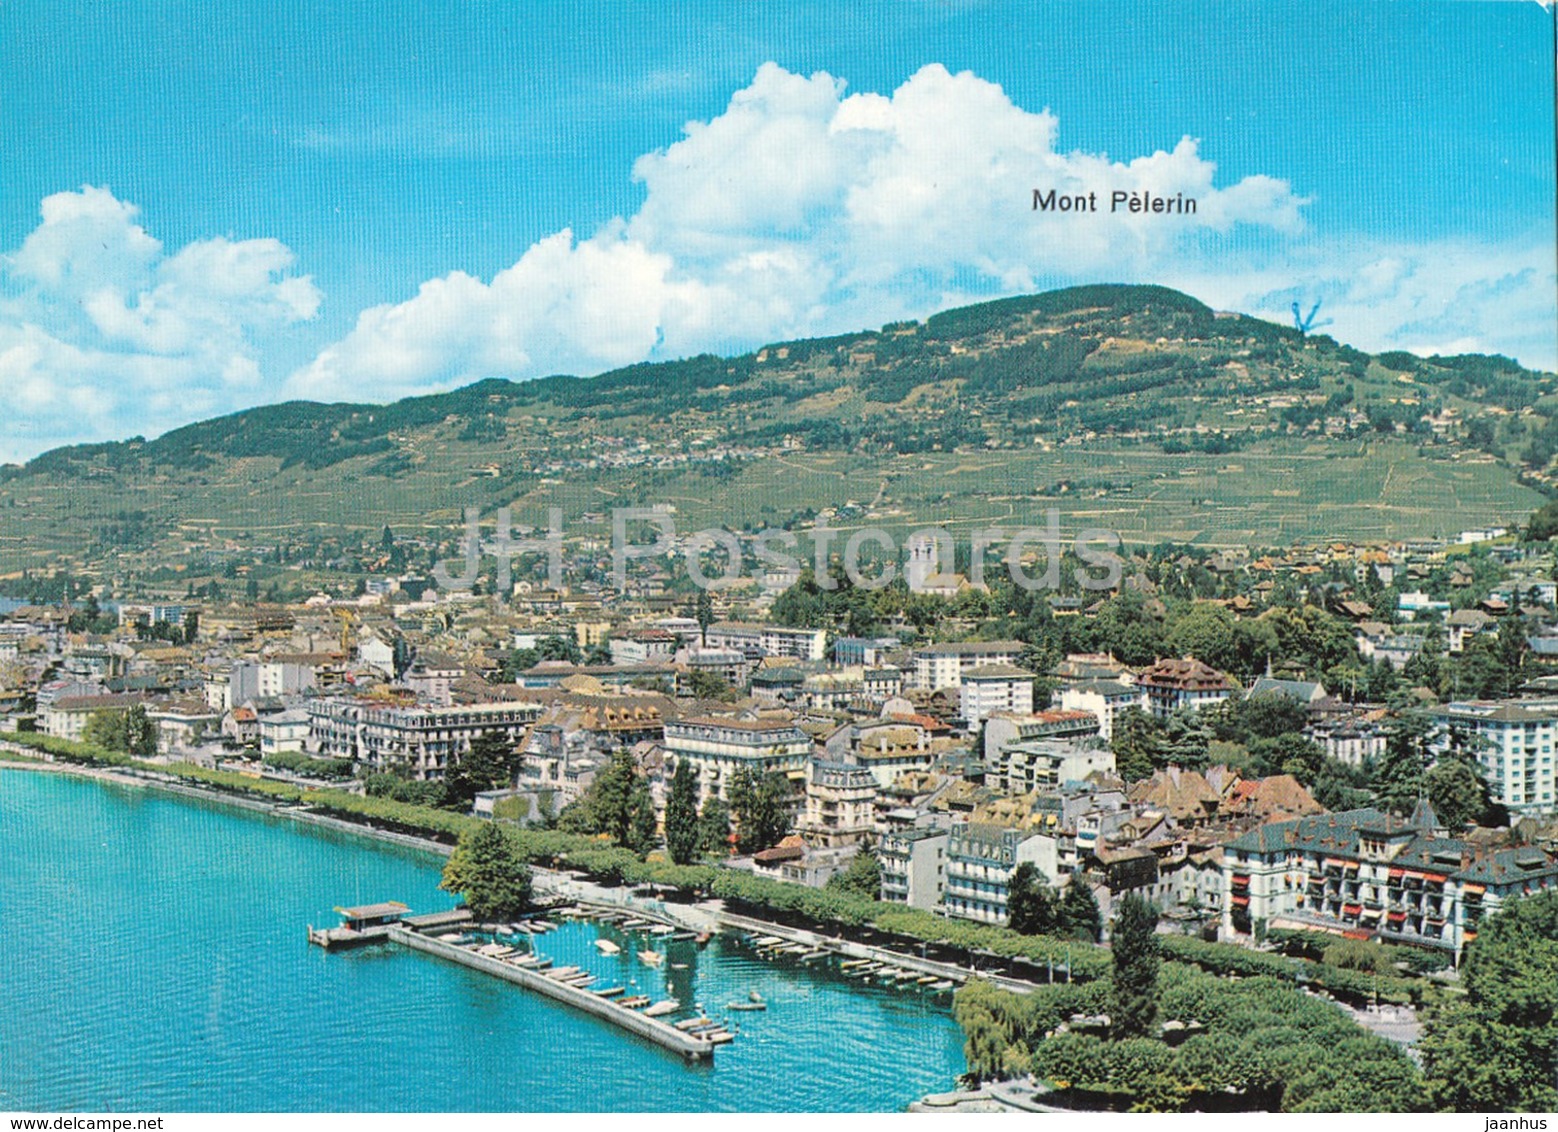 Vevey - Vue Aerienne - Au Premier Plan - L'Hotel Du Lac - Aerial View - 9145 - 1972 - Switzerland - Used - Premier